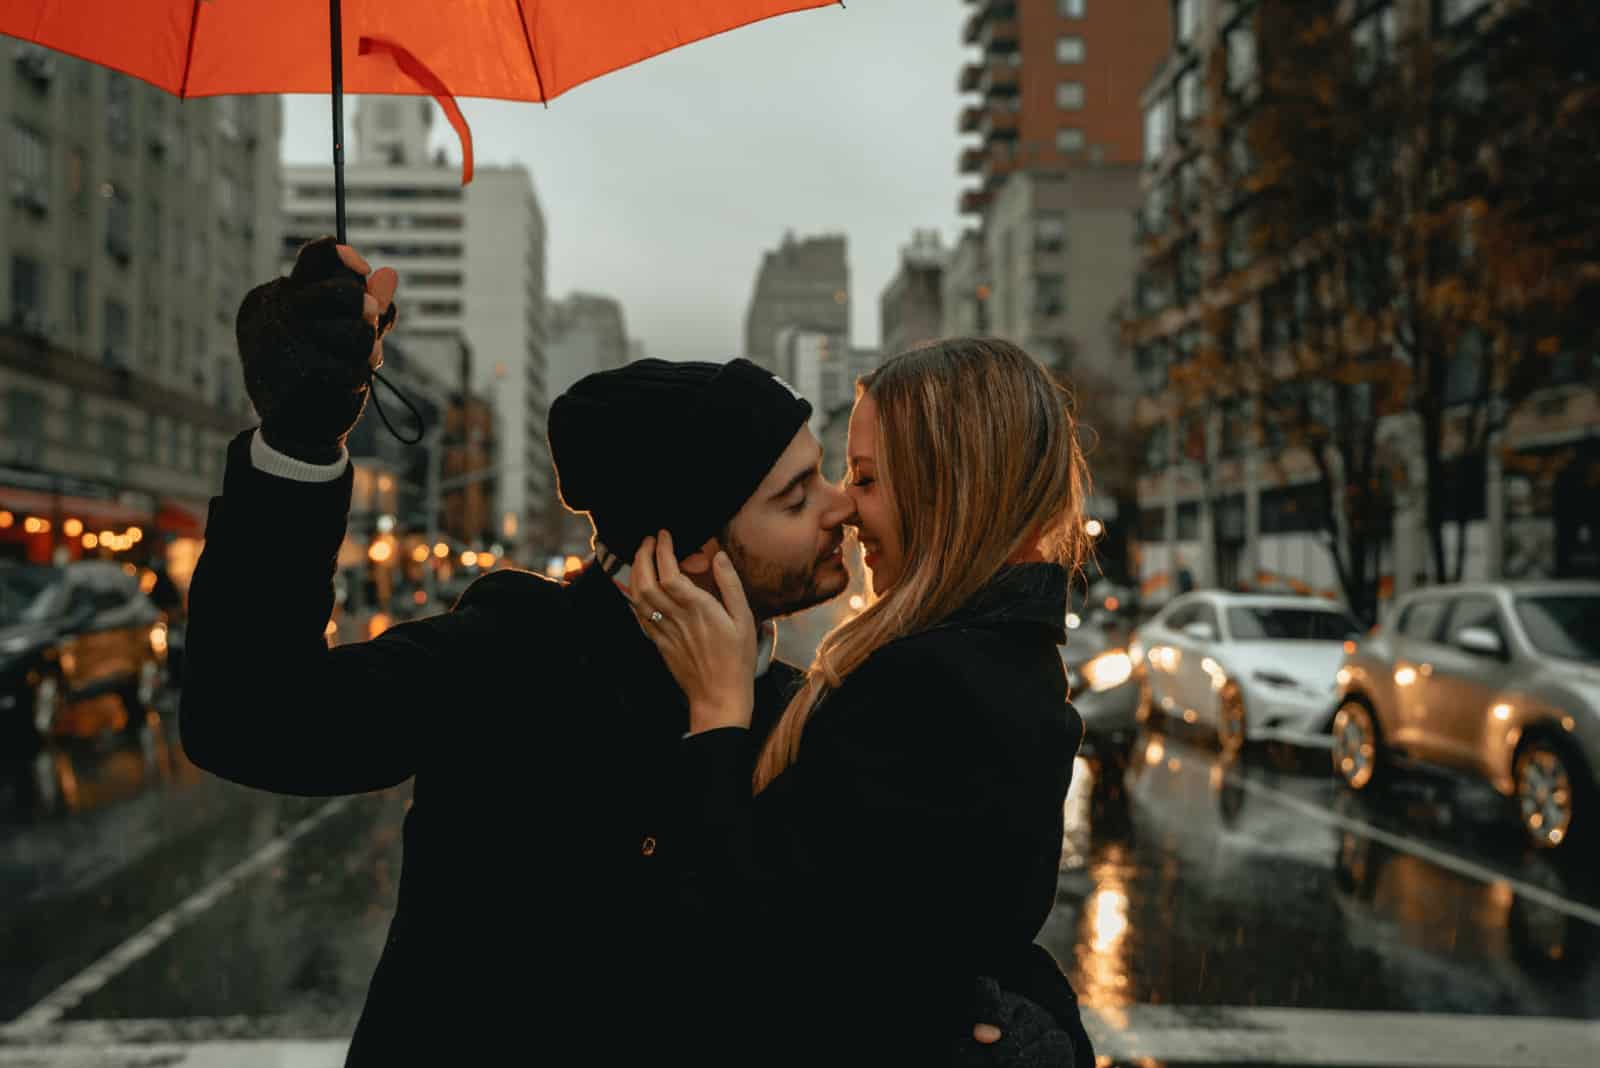 homme tenant un parapluie tout en embrassant une femme